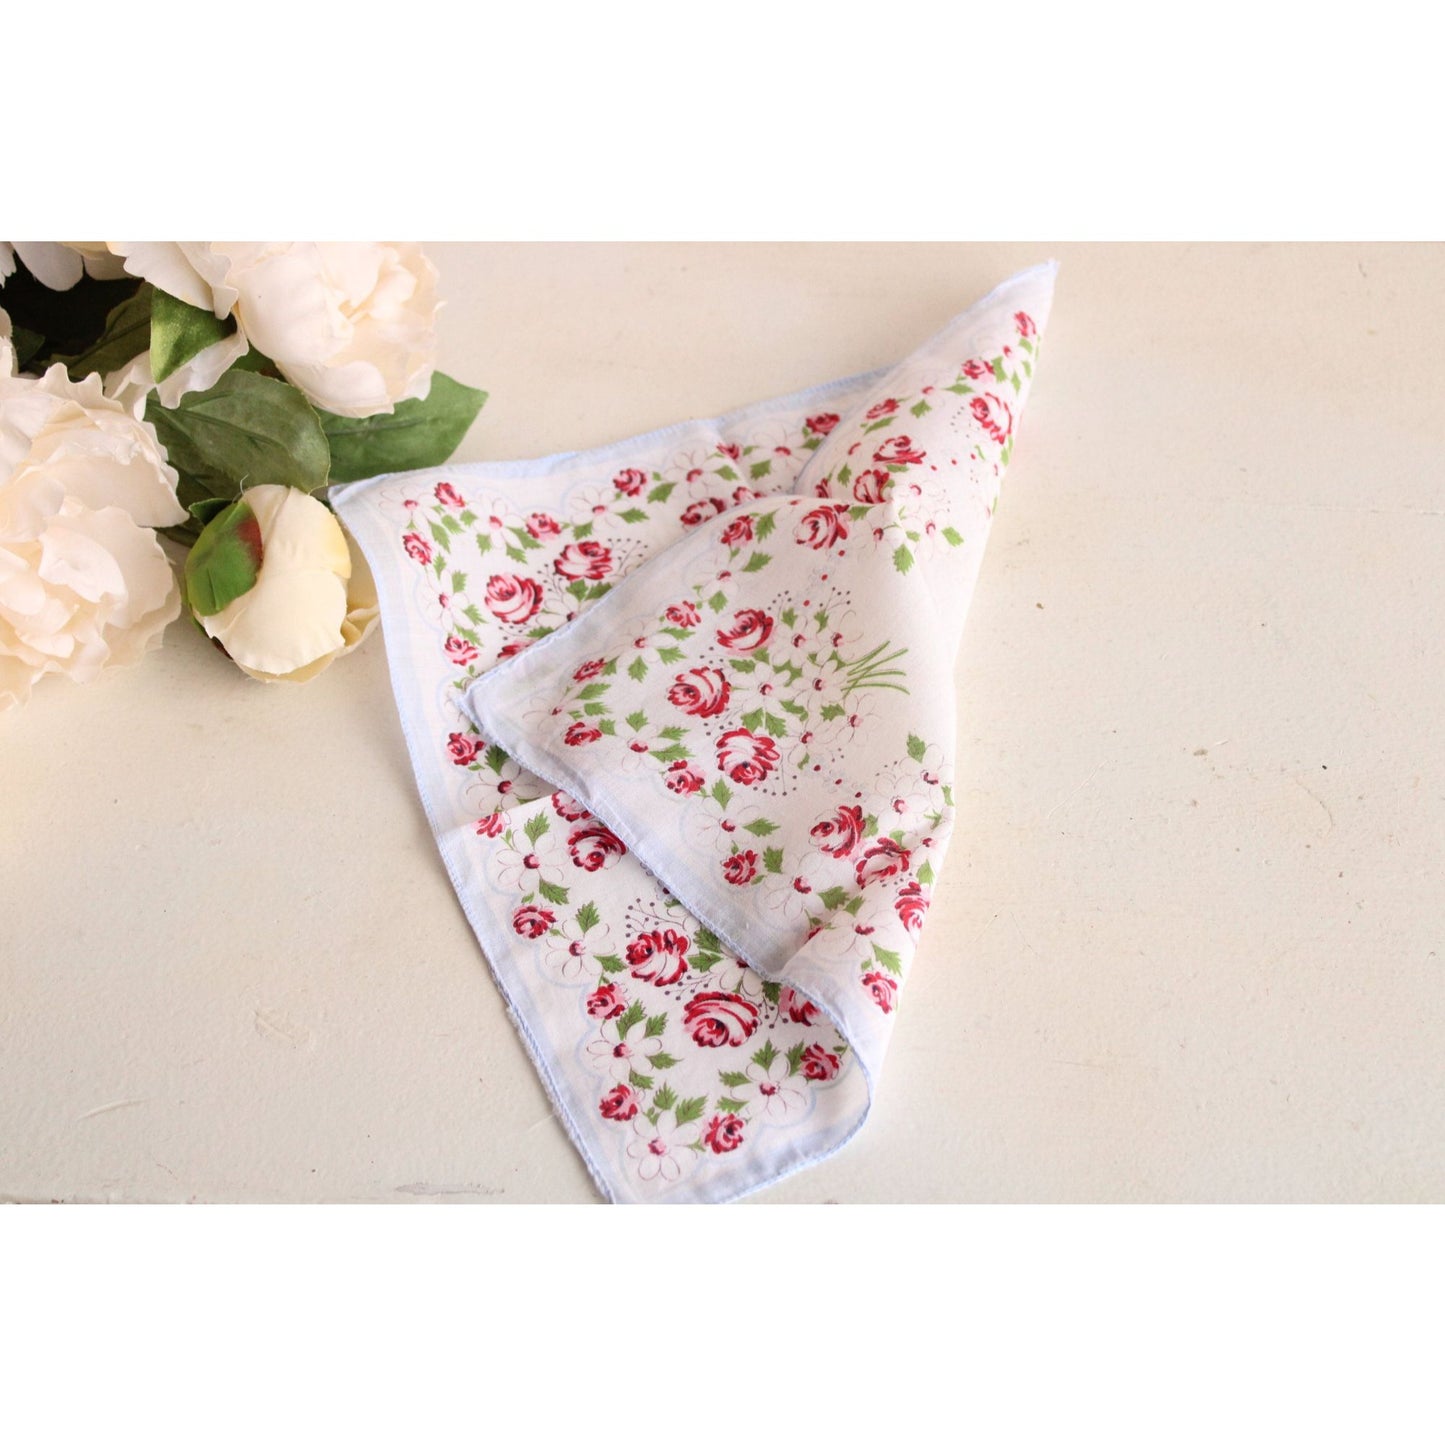 Vintage Floral Print Cotton Handkerchief